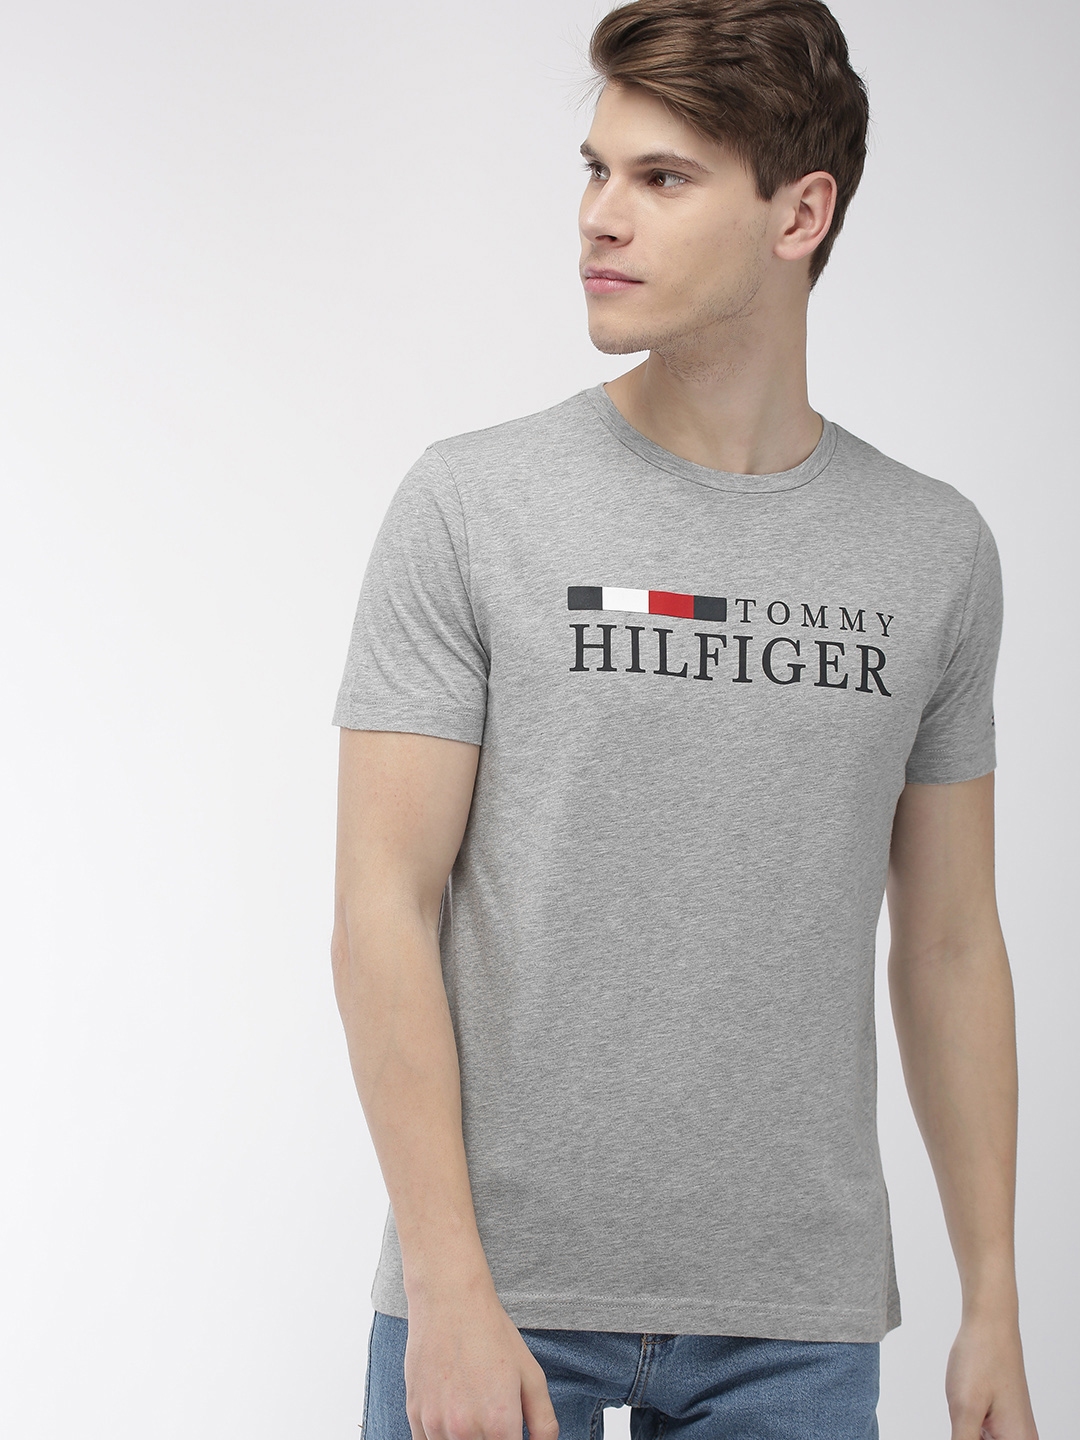 Buy Tommy Hilfiger Men Grey Melange Printed Round Neck T Shirt ...